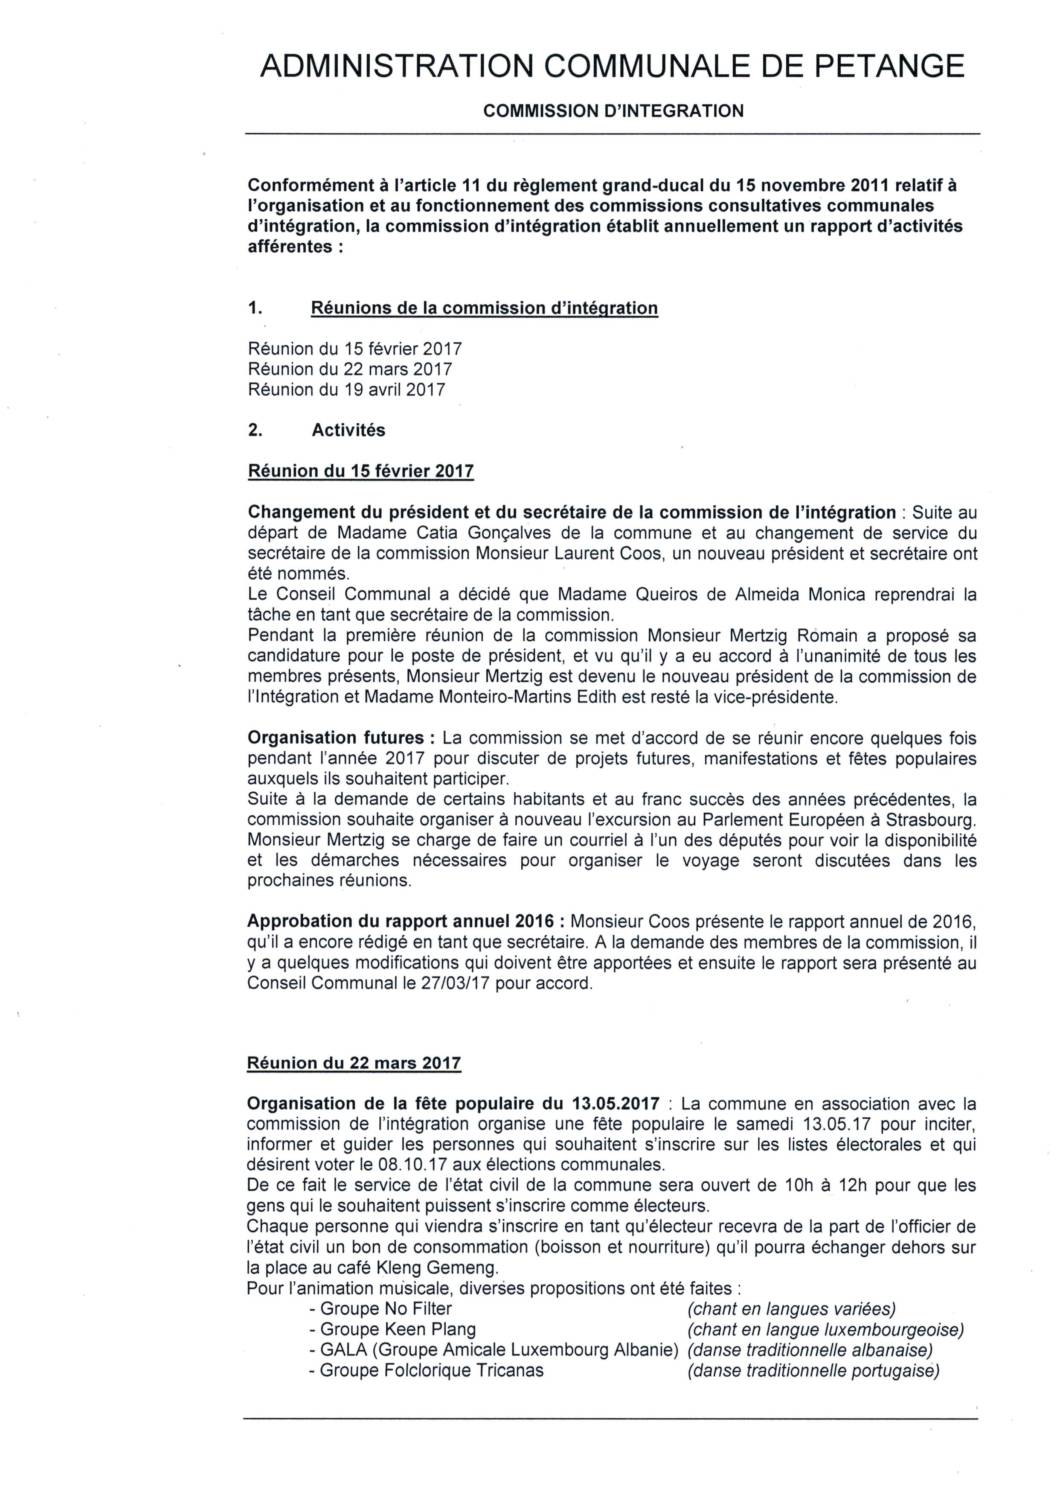 Commission d'intégration de la commune de Pétange - Rapport annuel 2017